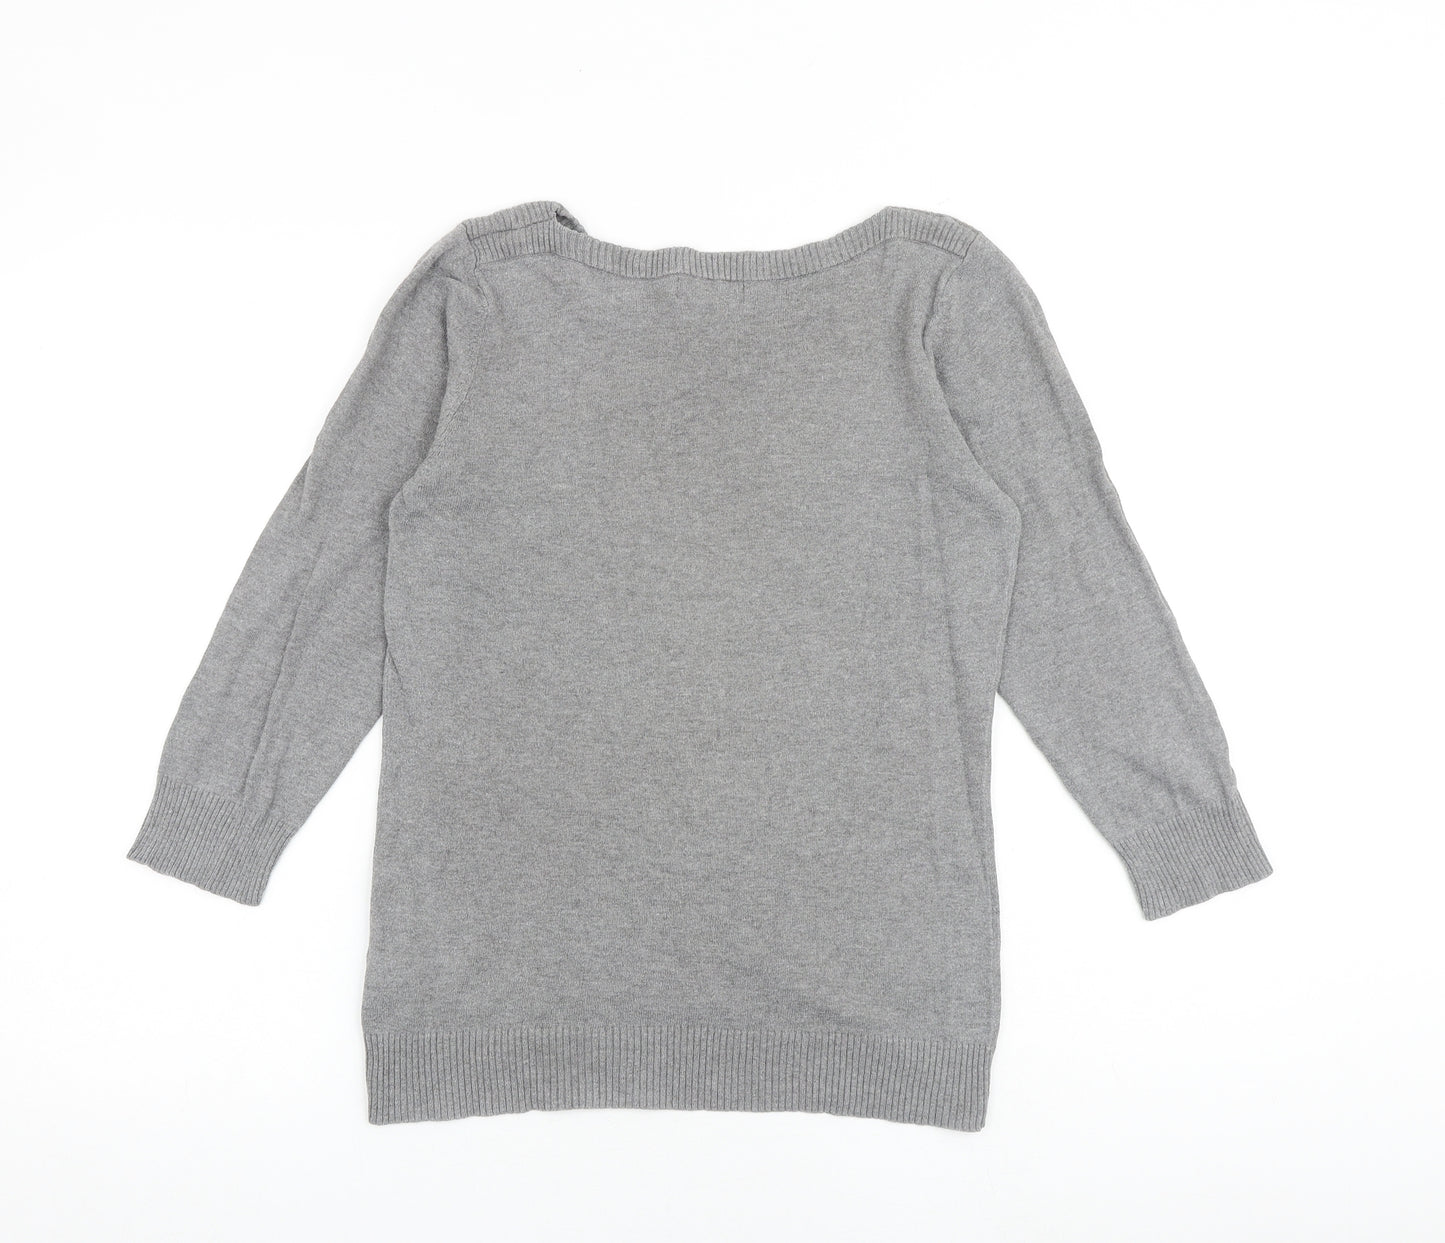 NEXT Womens Grey Round Neck Cotton Pullover Jumper Size 12